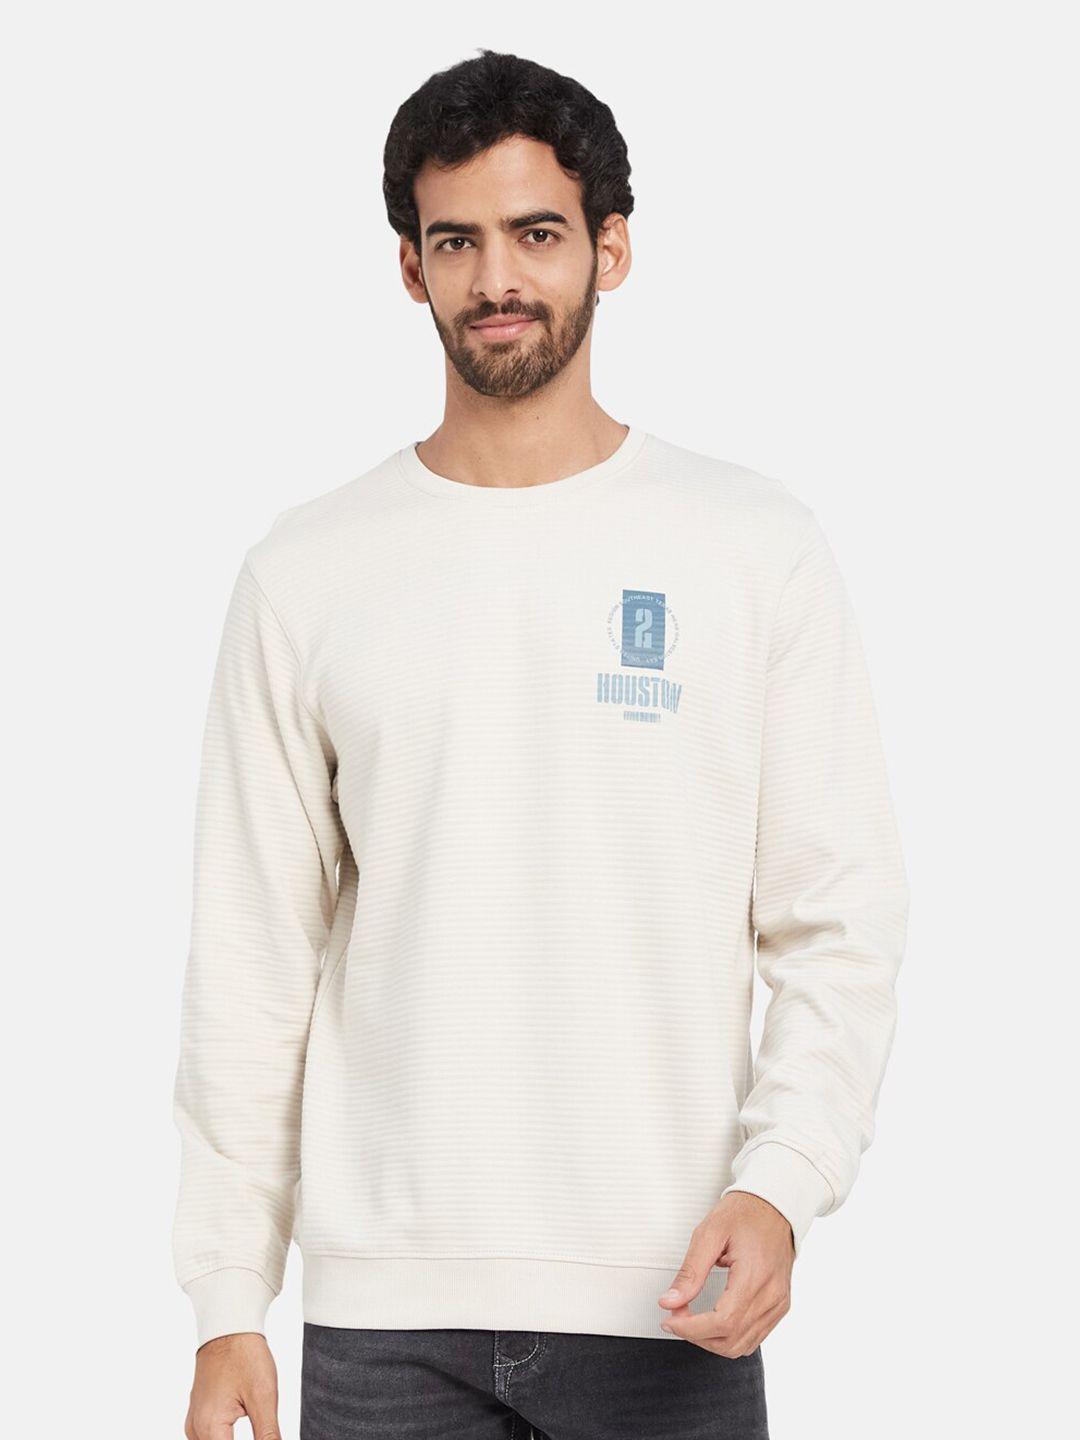 octave typography printed fleece pullover sweatshirt